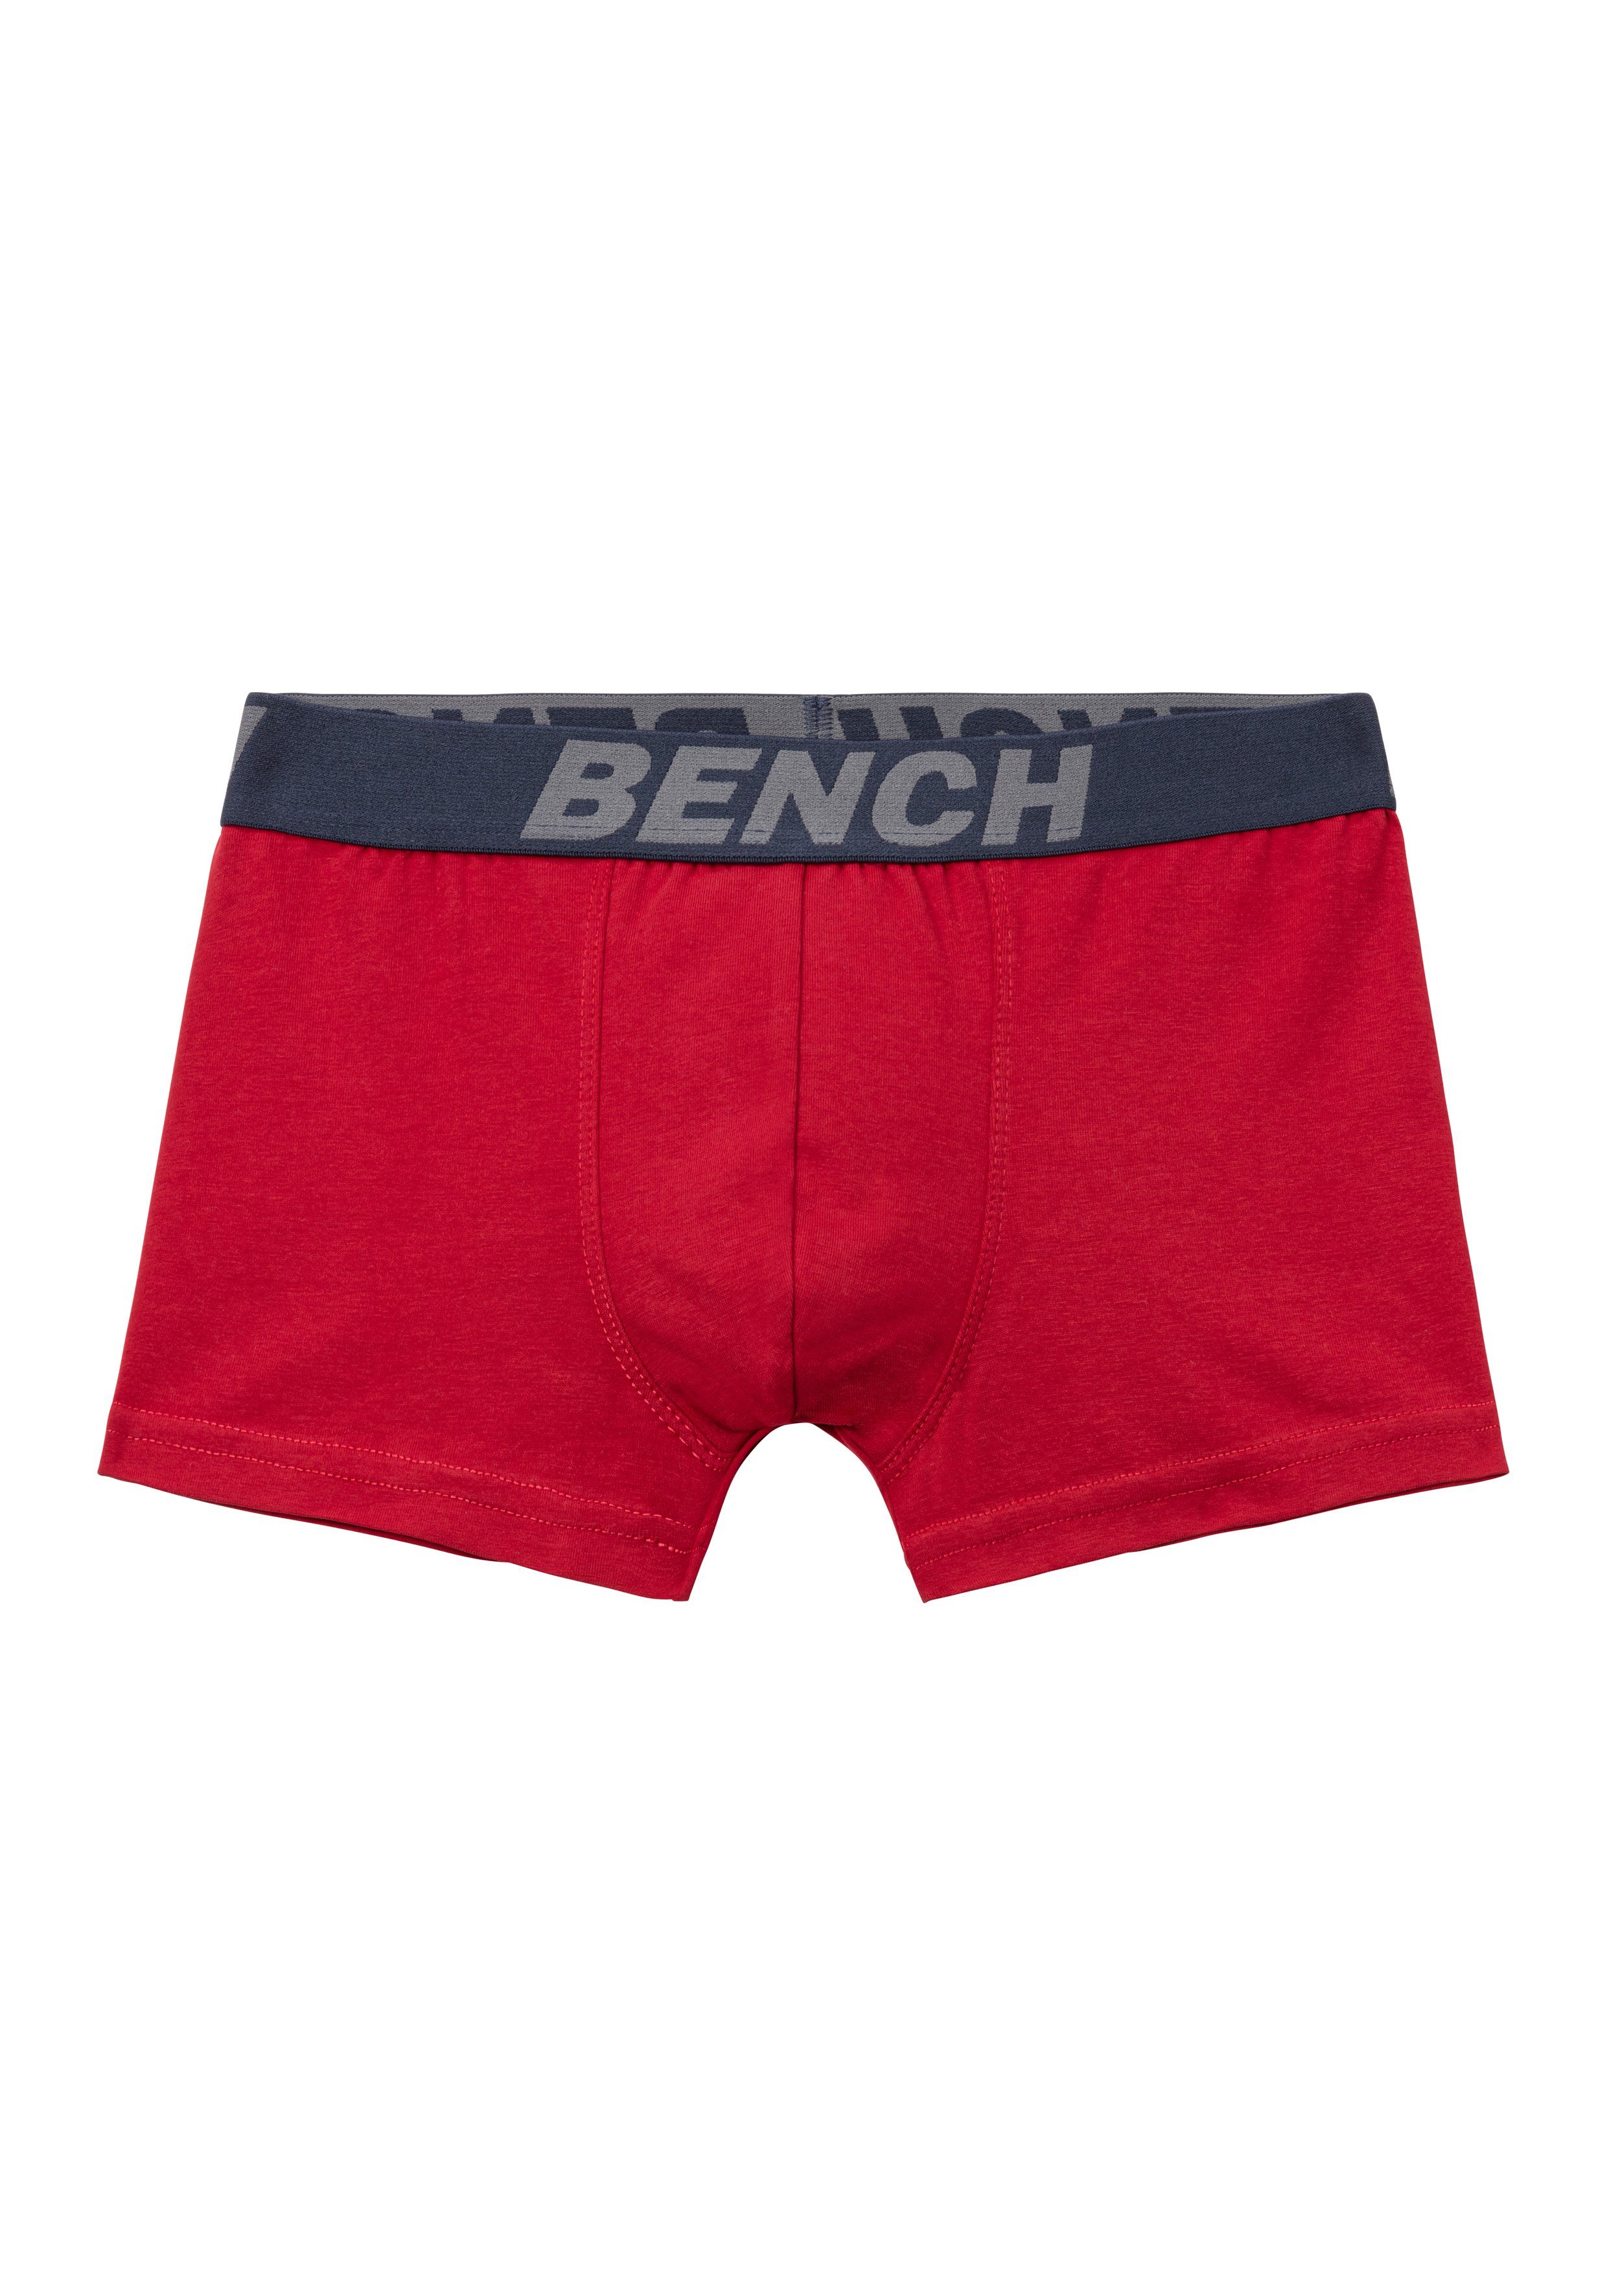 Bench. Boxer (Packung, 4-St) für im weiß, blau, rot, Bench Schriftzug Bund mit grau-meliert Jungen